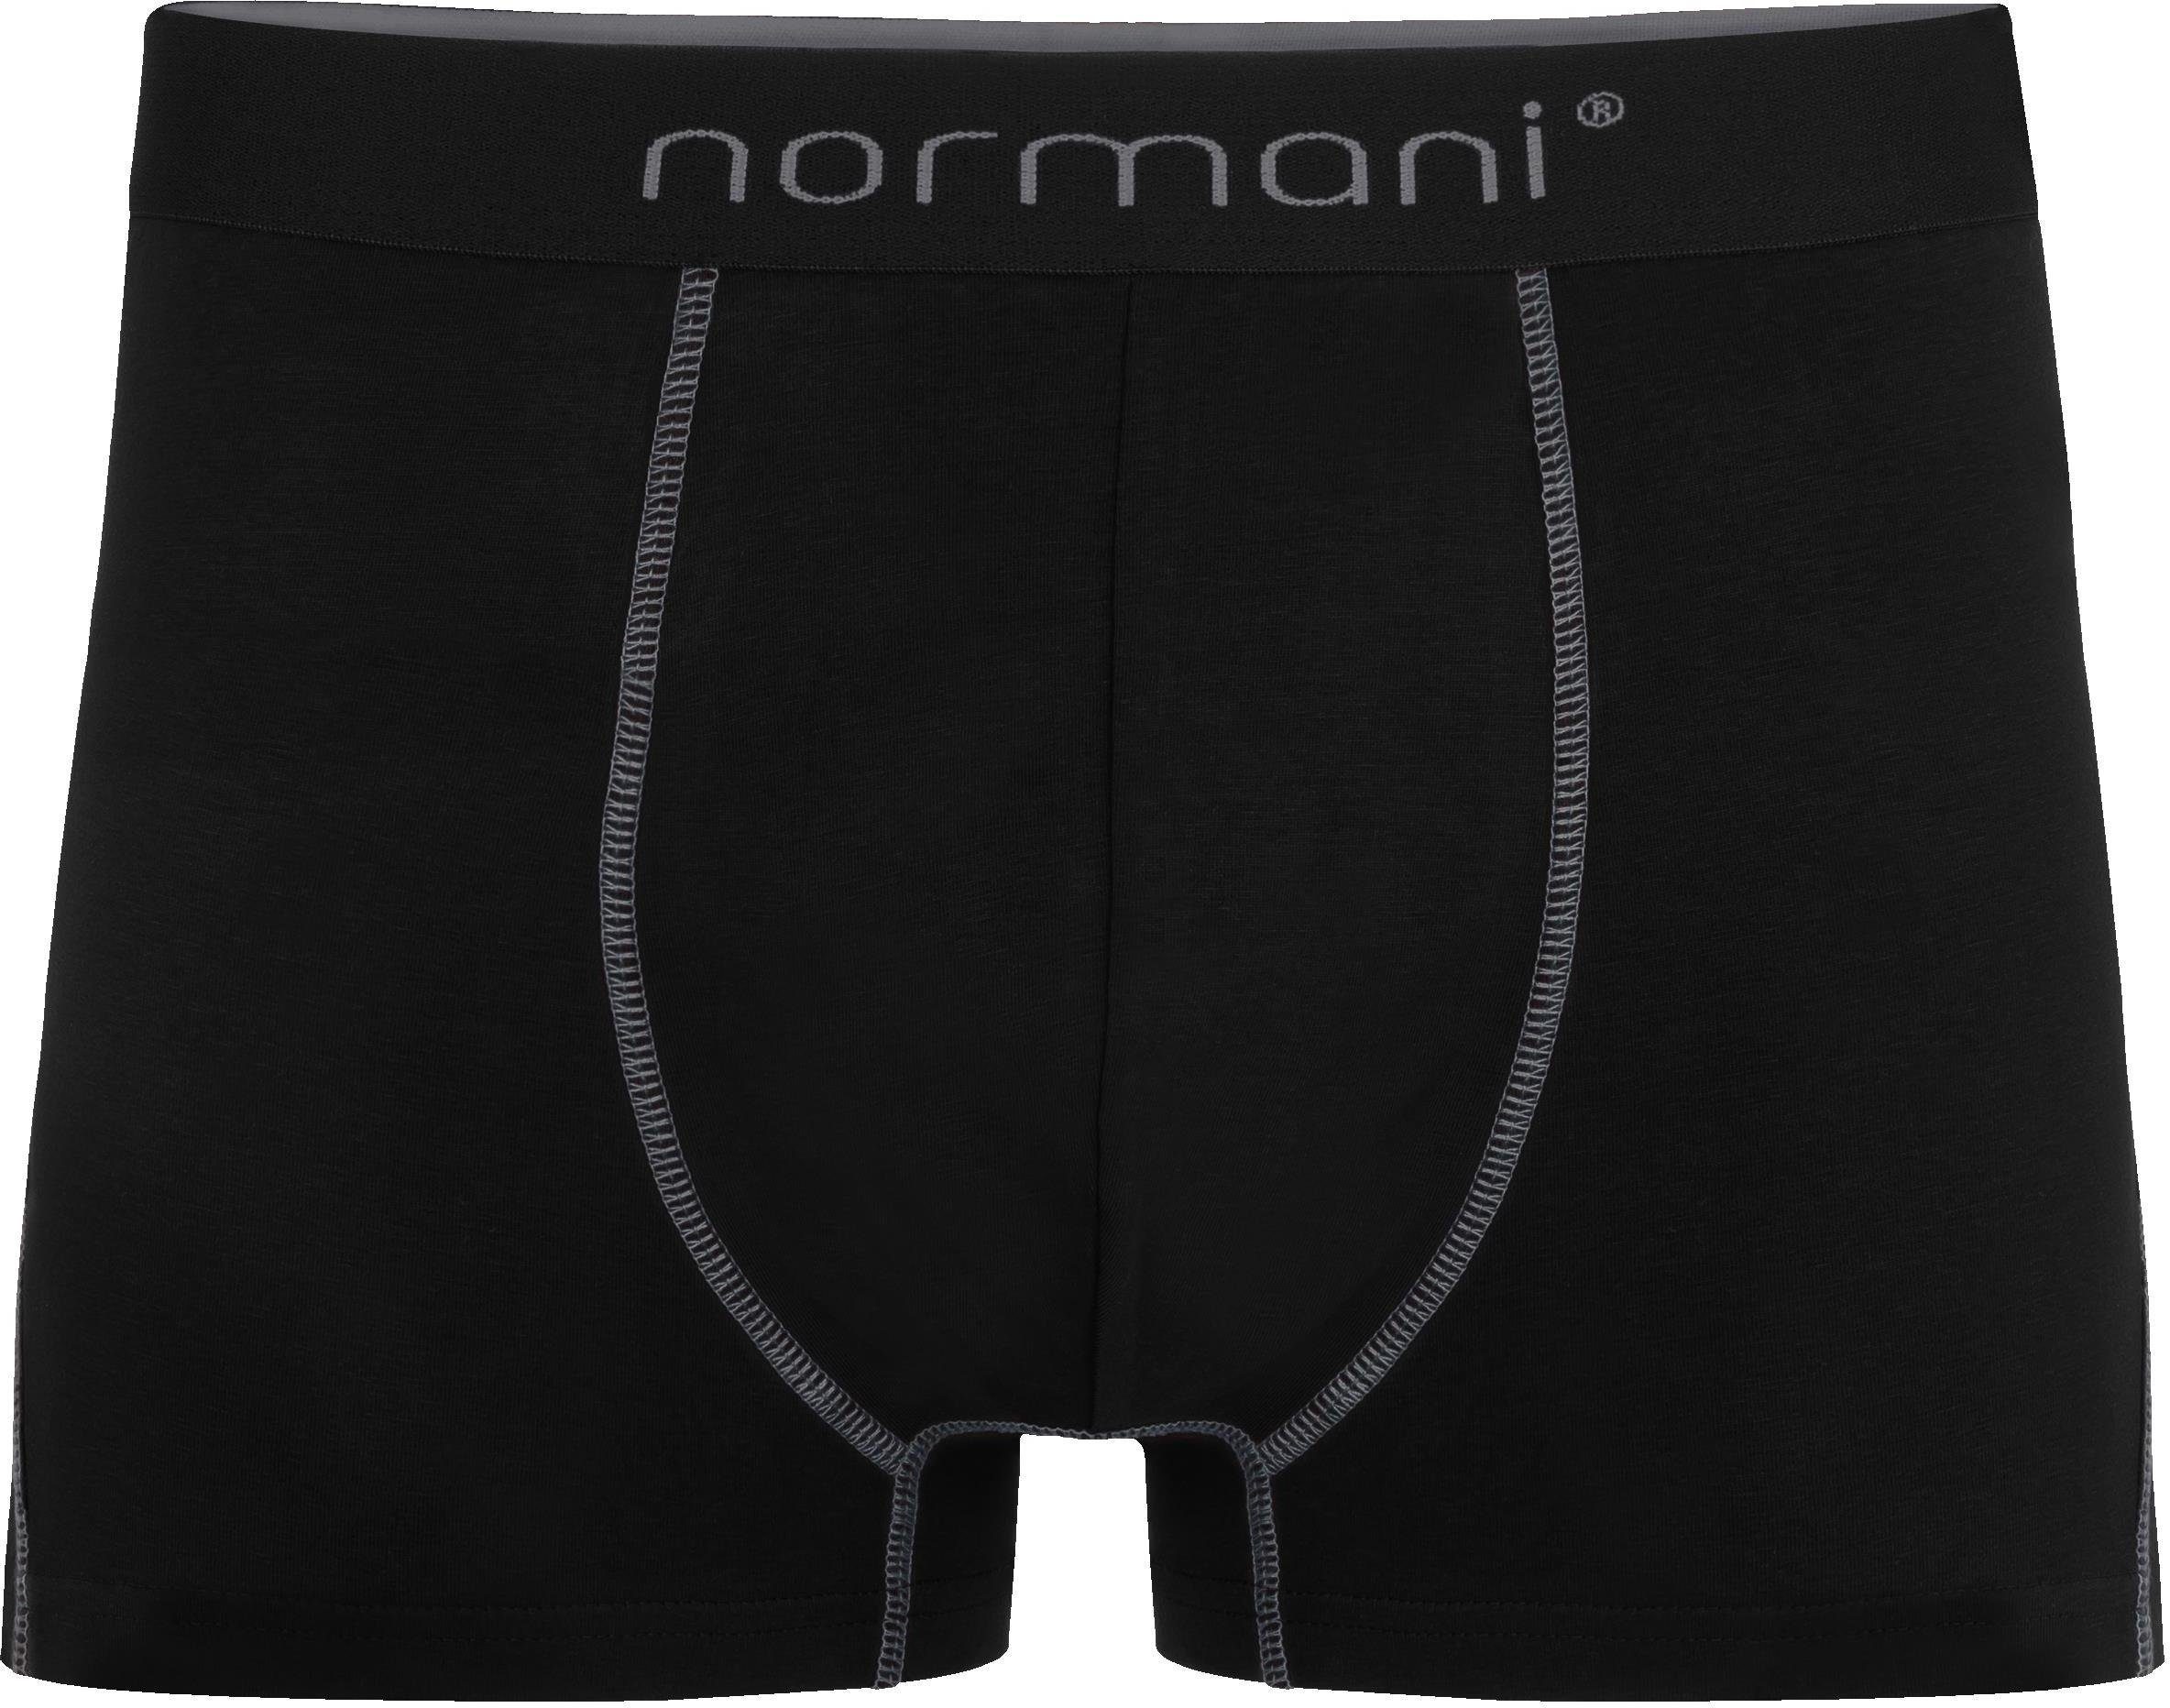 Boxershorts Männer atmungsaktiver Baumwoll-Boxershorts aus Grau 6 Herren normani Unterhose für Baumwolle